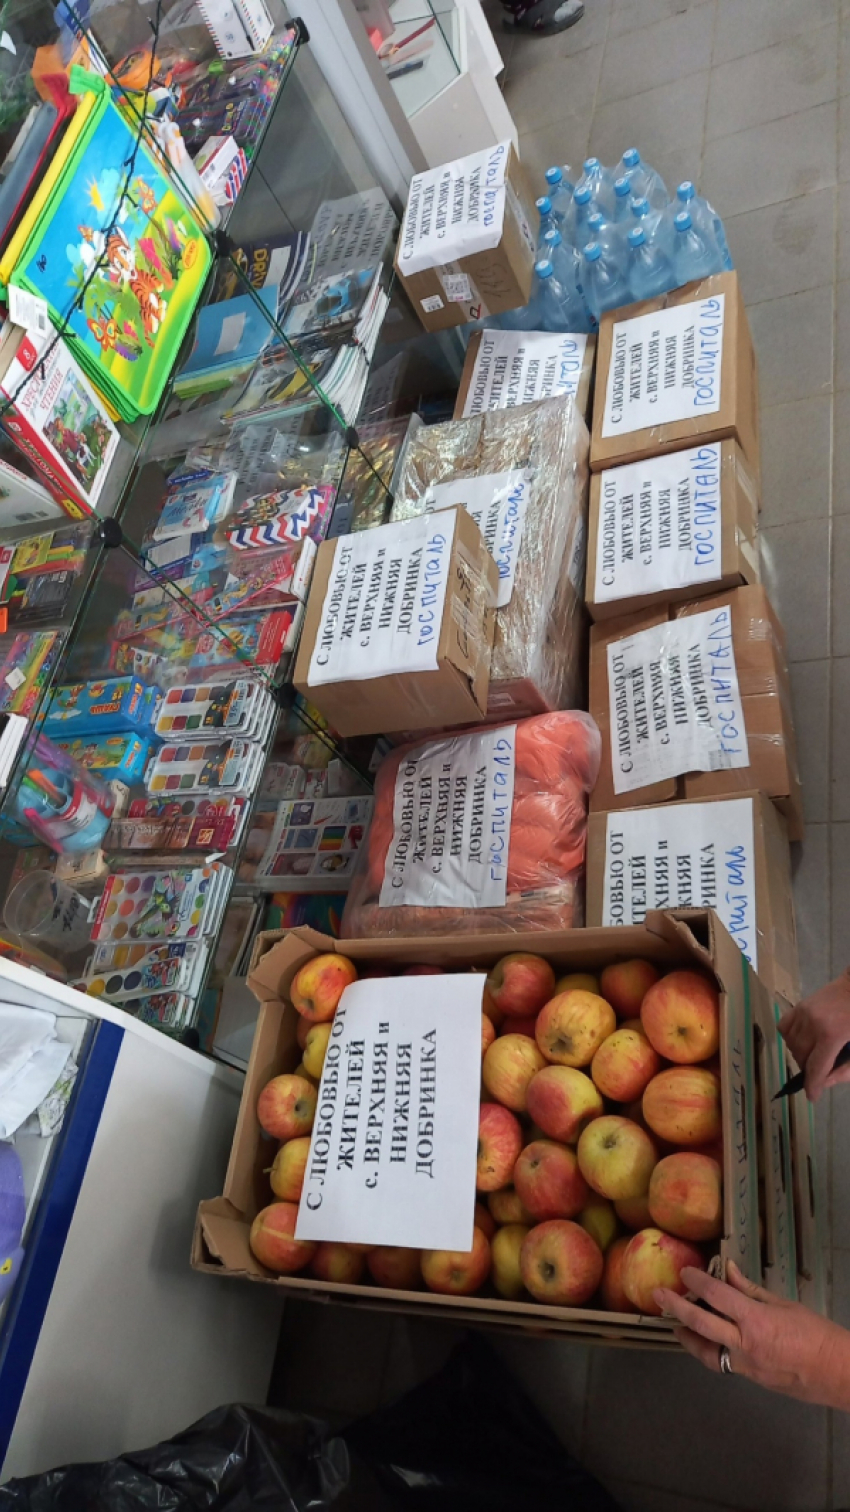 Сумки для гранат и магазинов, сети, дождевики, разгрузочные пояса, пироги, фрукты  «поехали» на фронт бойцам от жителей Камышинского района